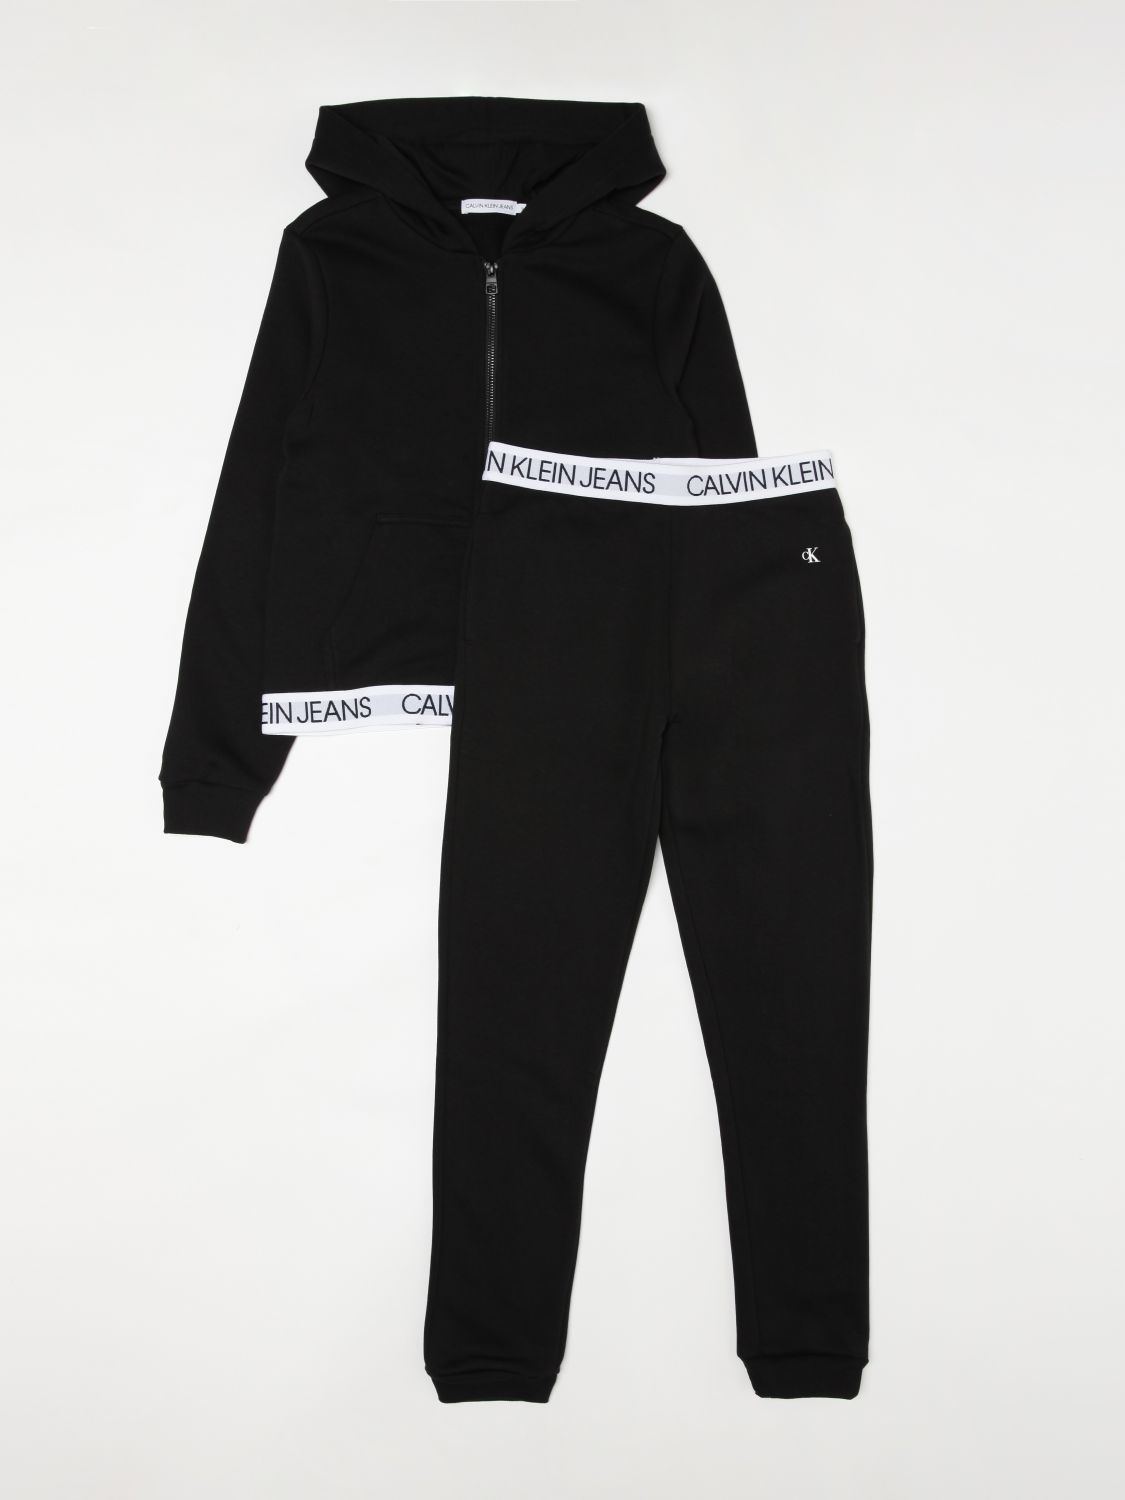 Kombinationen Calvin Klein: Anzug kinder Calvin Klein schwarz 1